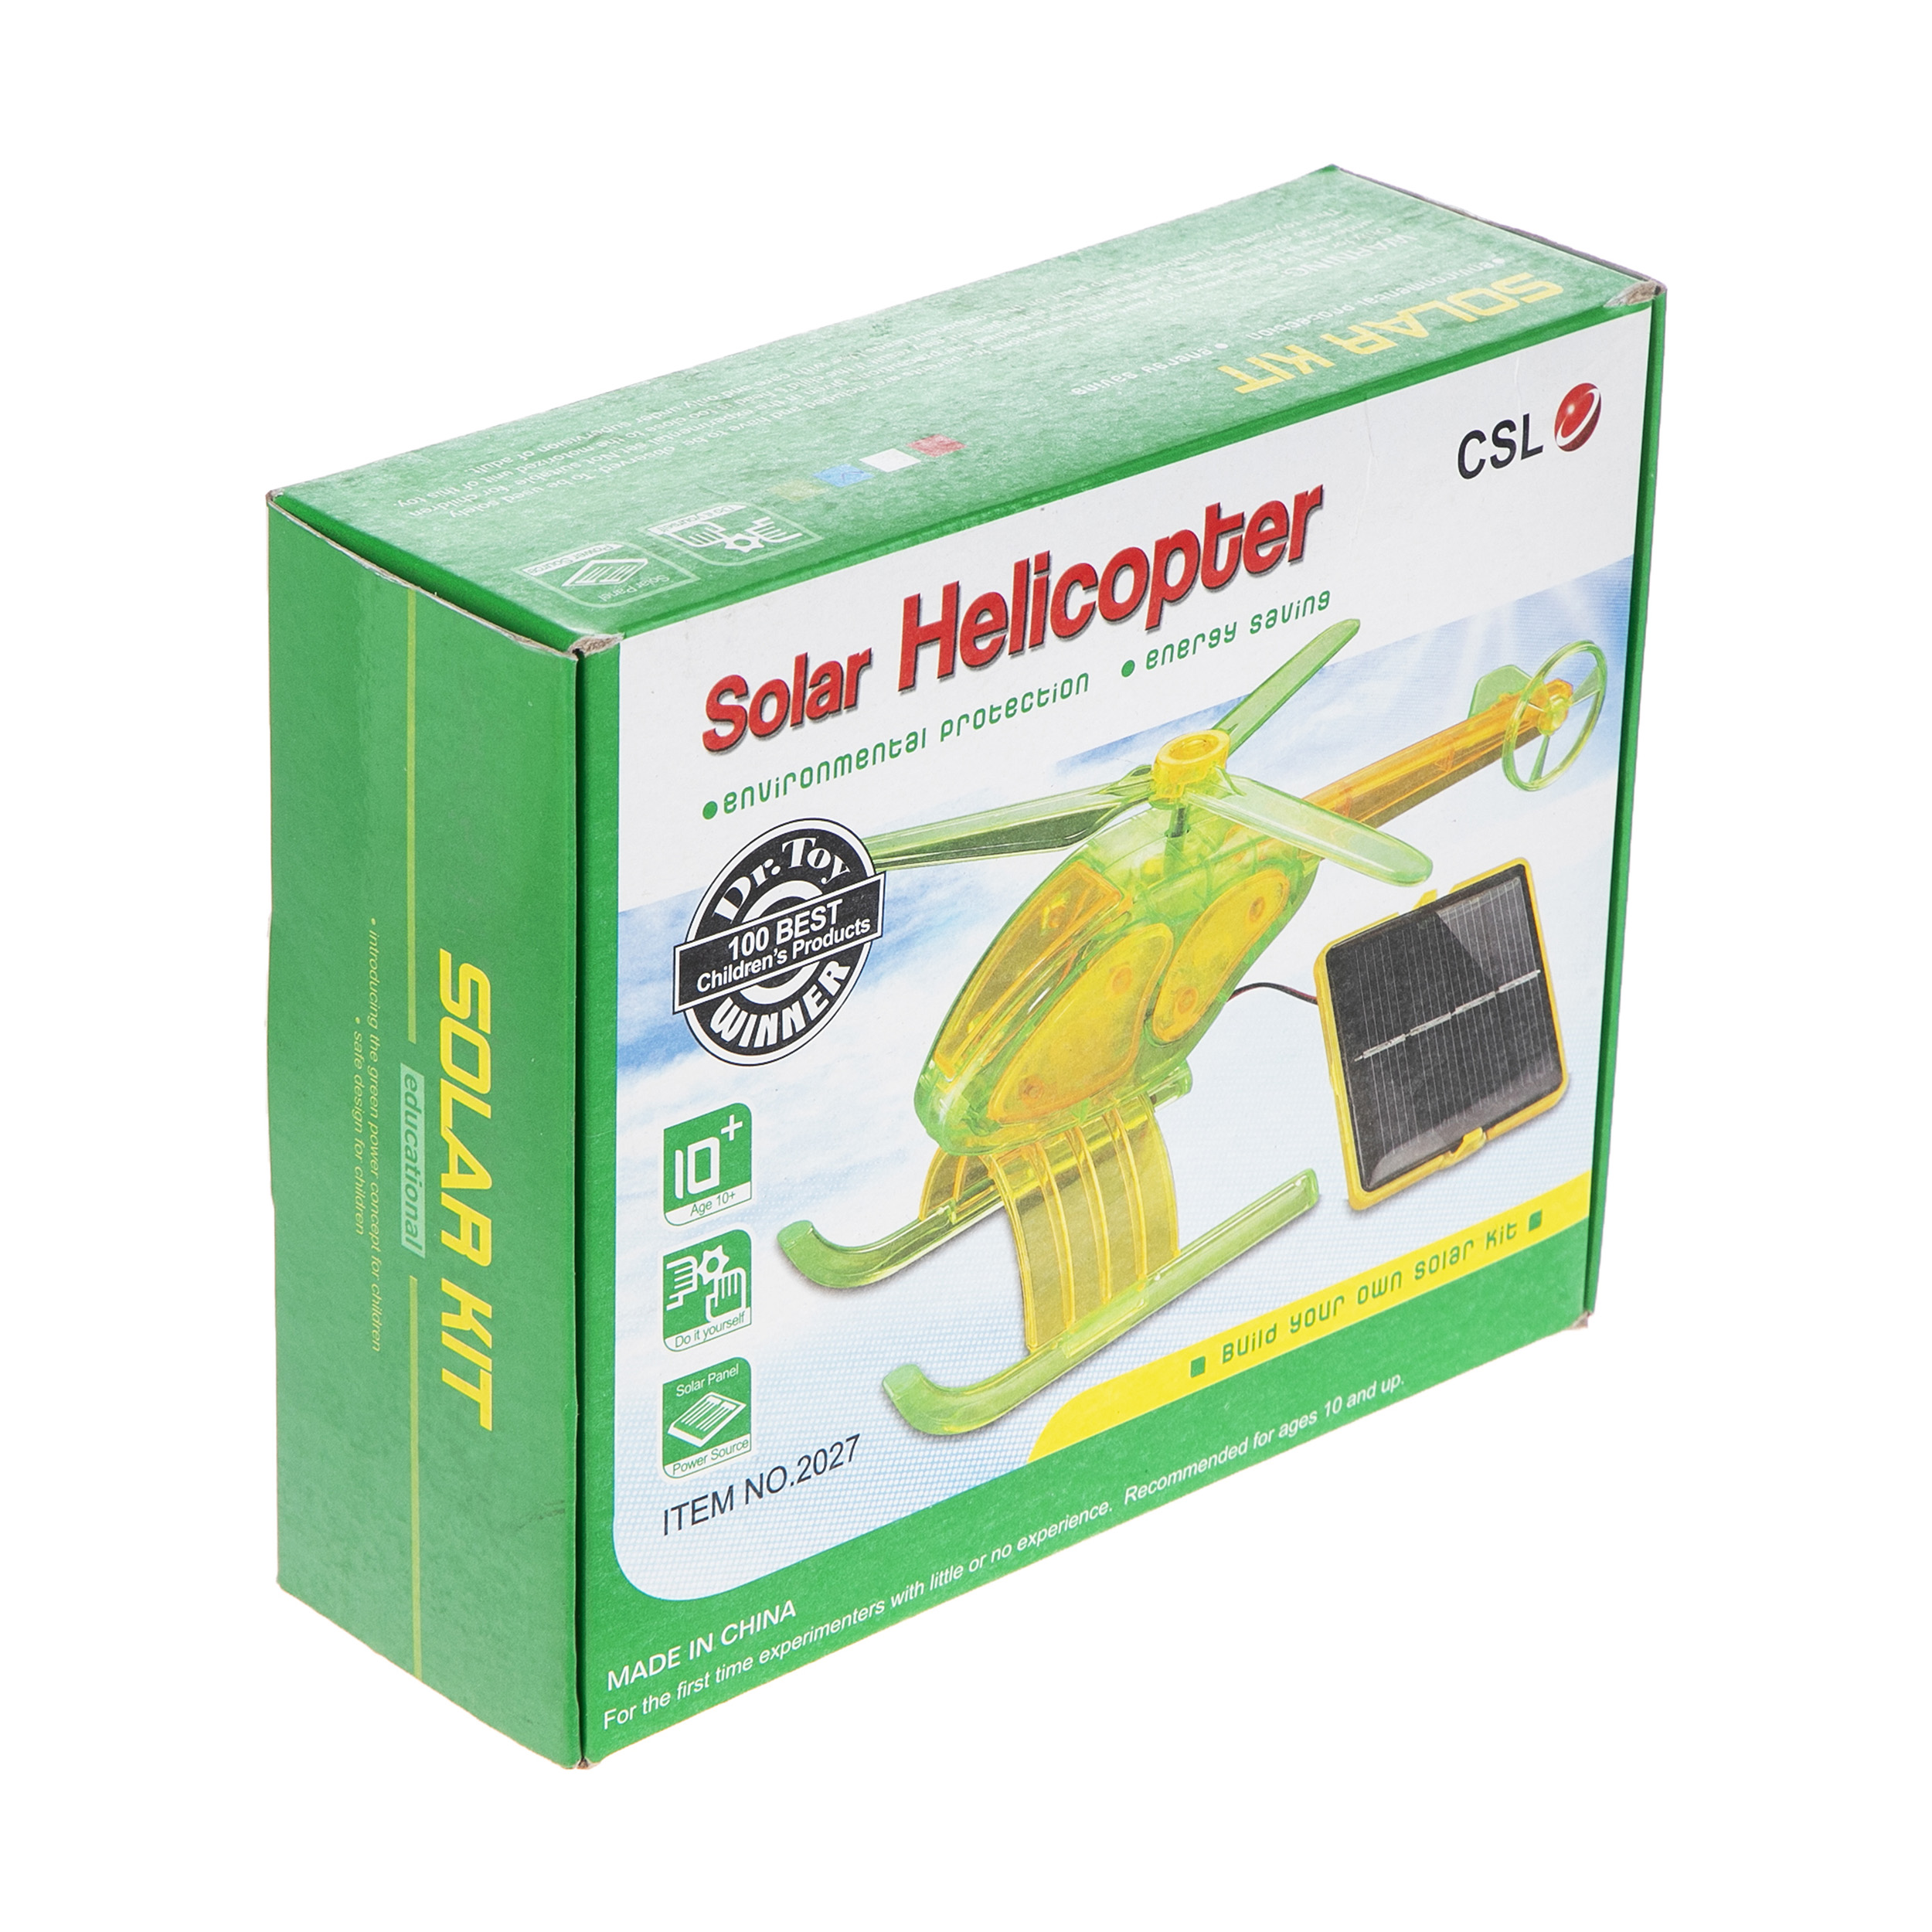 ربات خورشیدی سی ال اس طرح هلی کوپتر کد3457